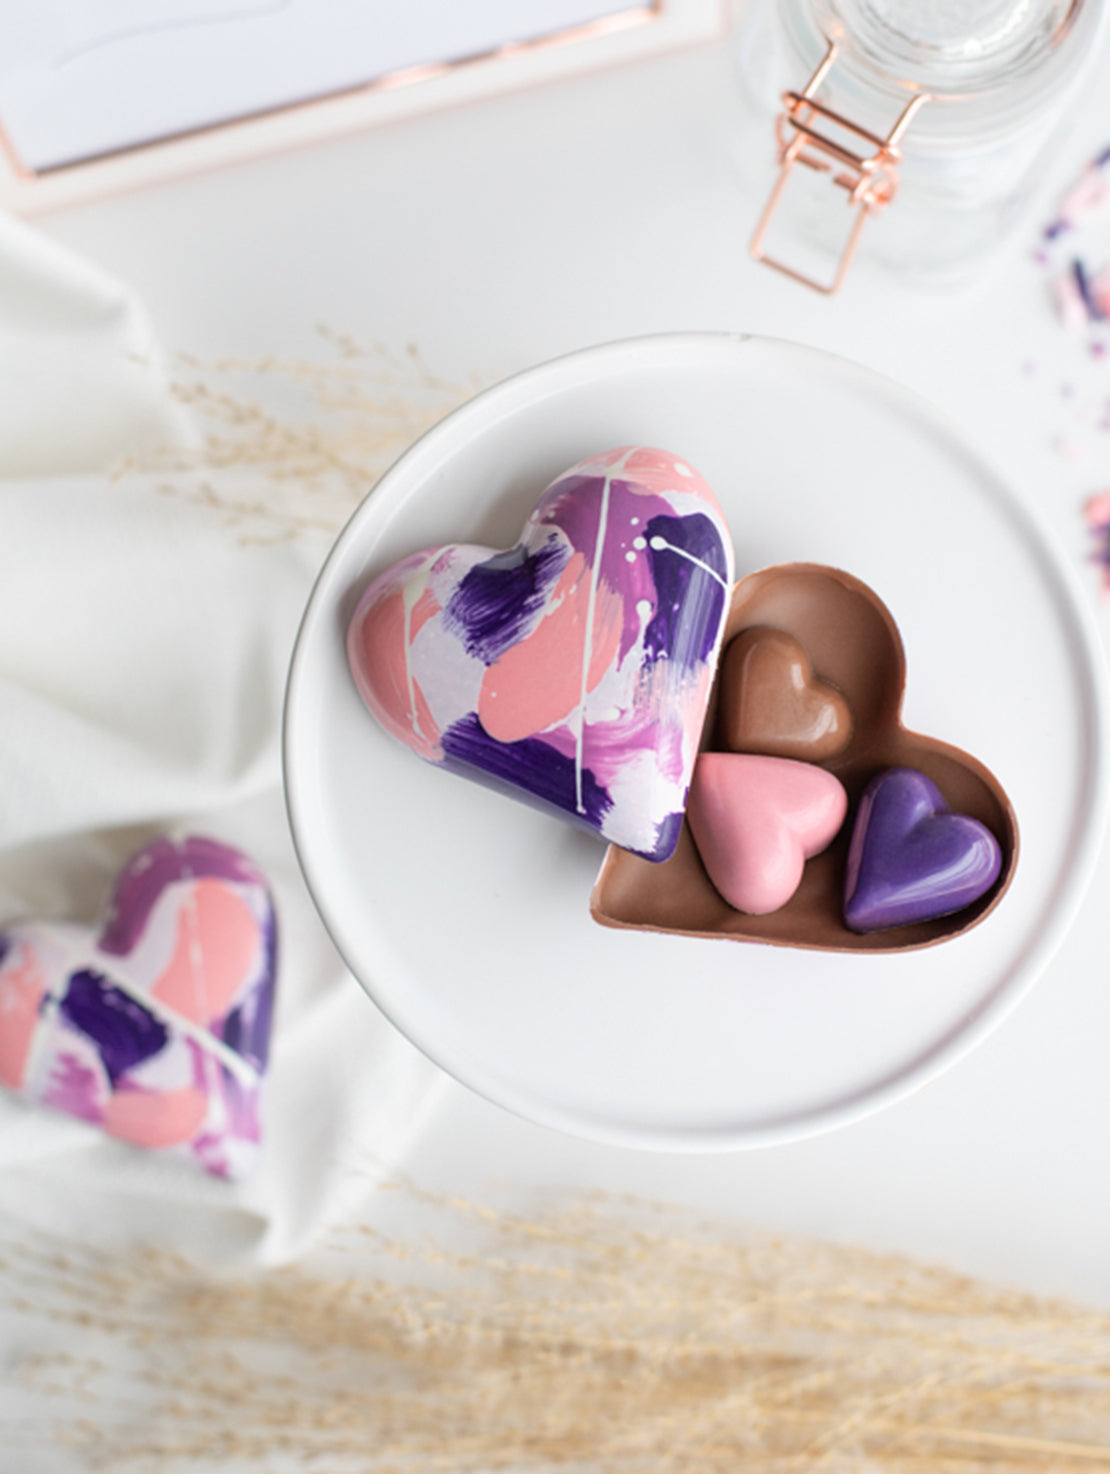 le meilleur chocolat pour la St-Valentin coeur